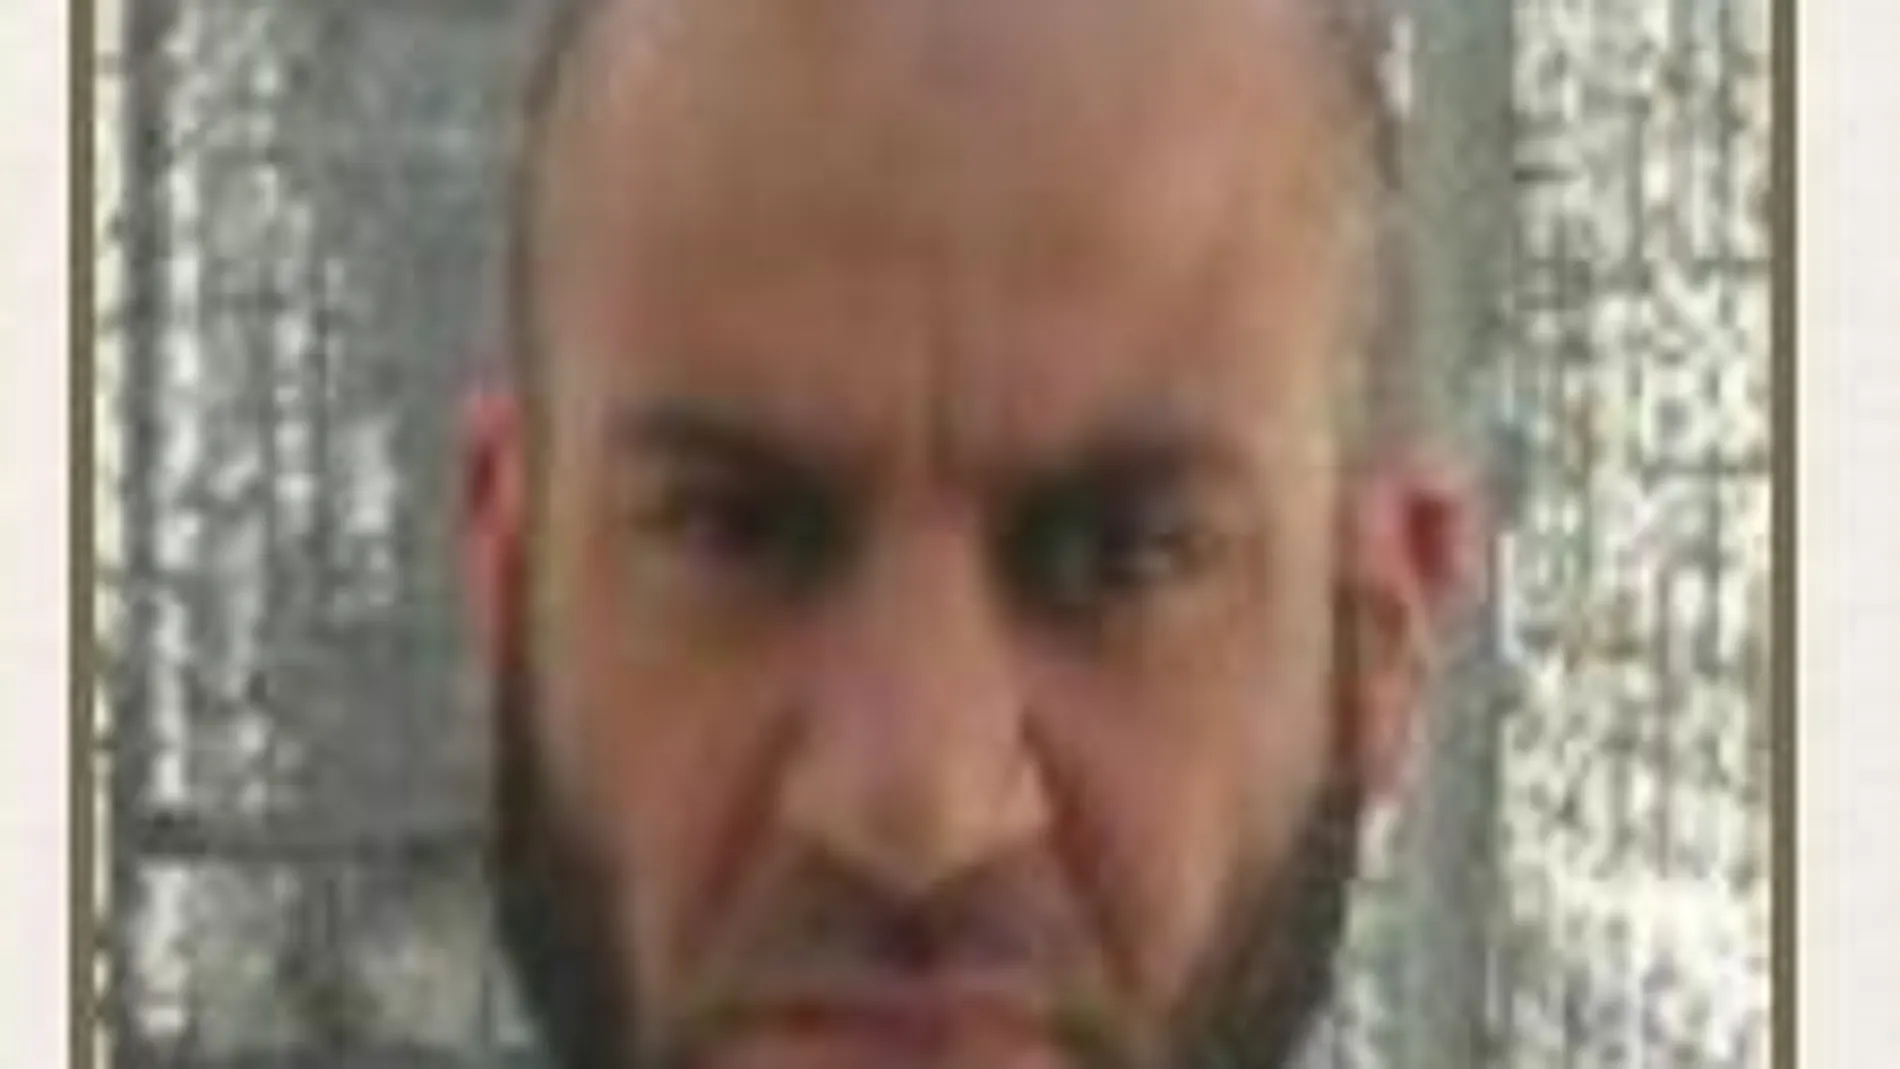 El cabecilla de Daesh, Ibrahim Hasimi alienta a utilizar venenos en los atentados